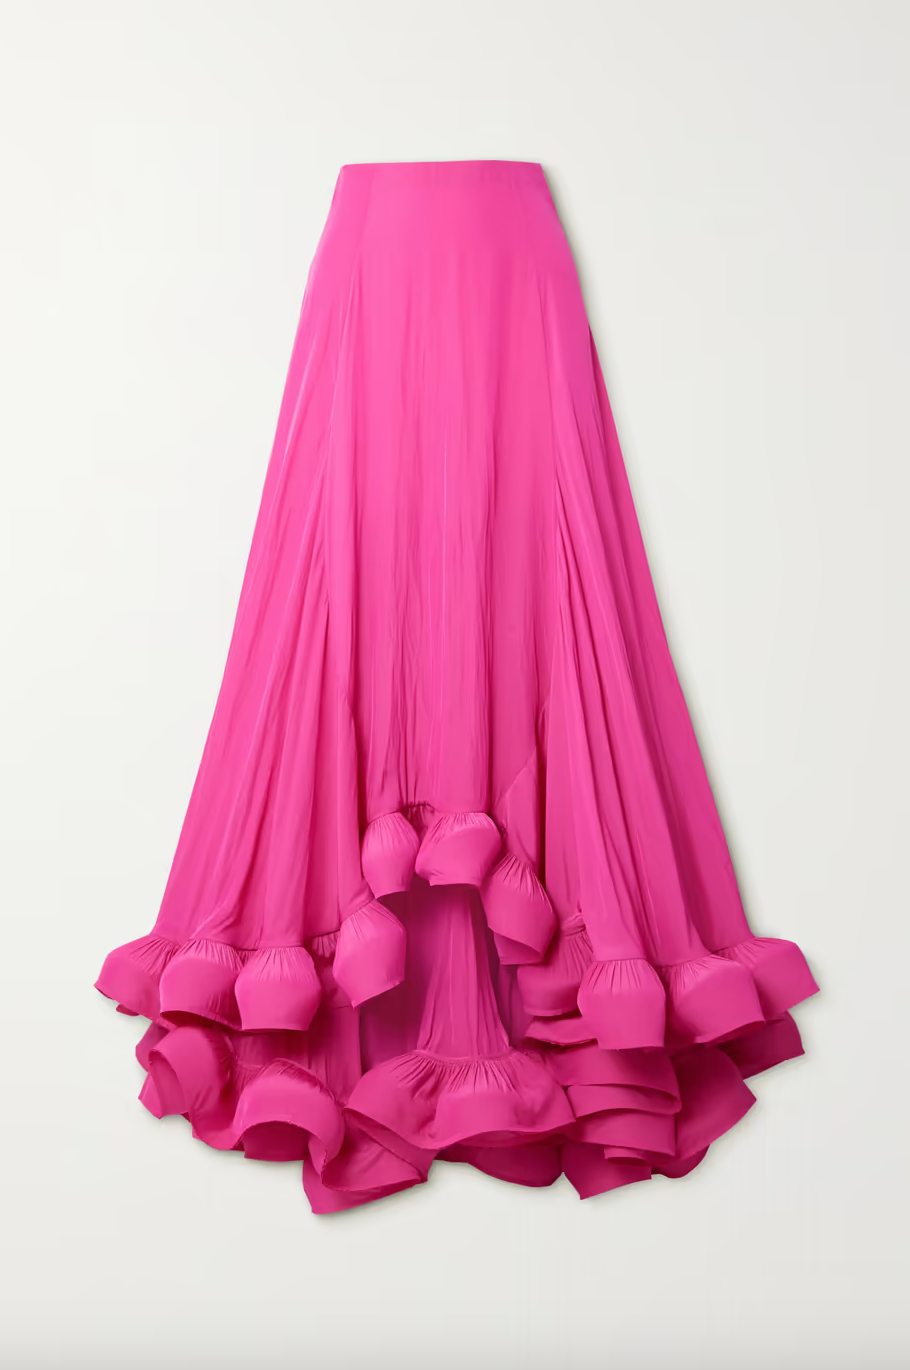 Jenna Lyons' Pink Ruffle Maxi Skirt